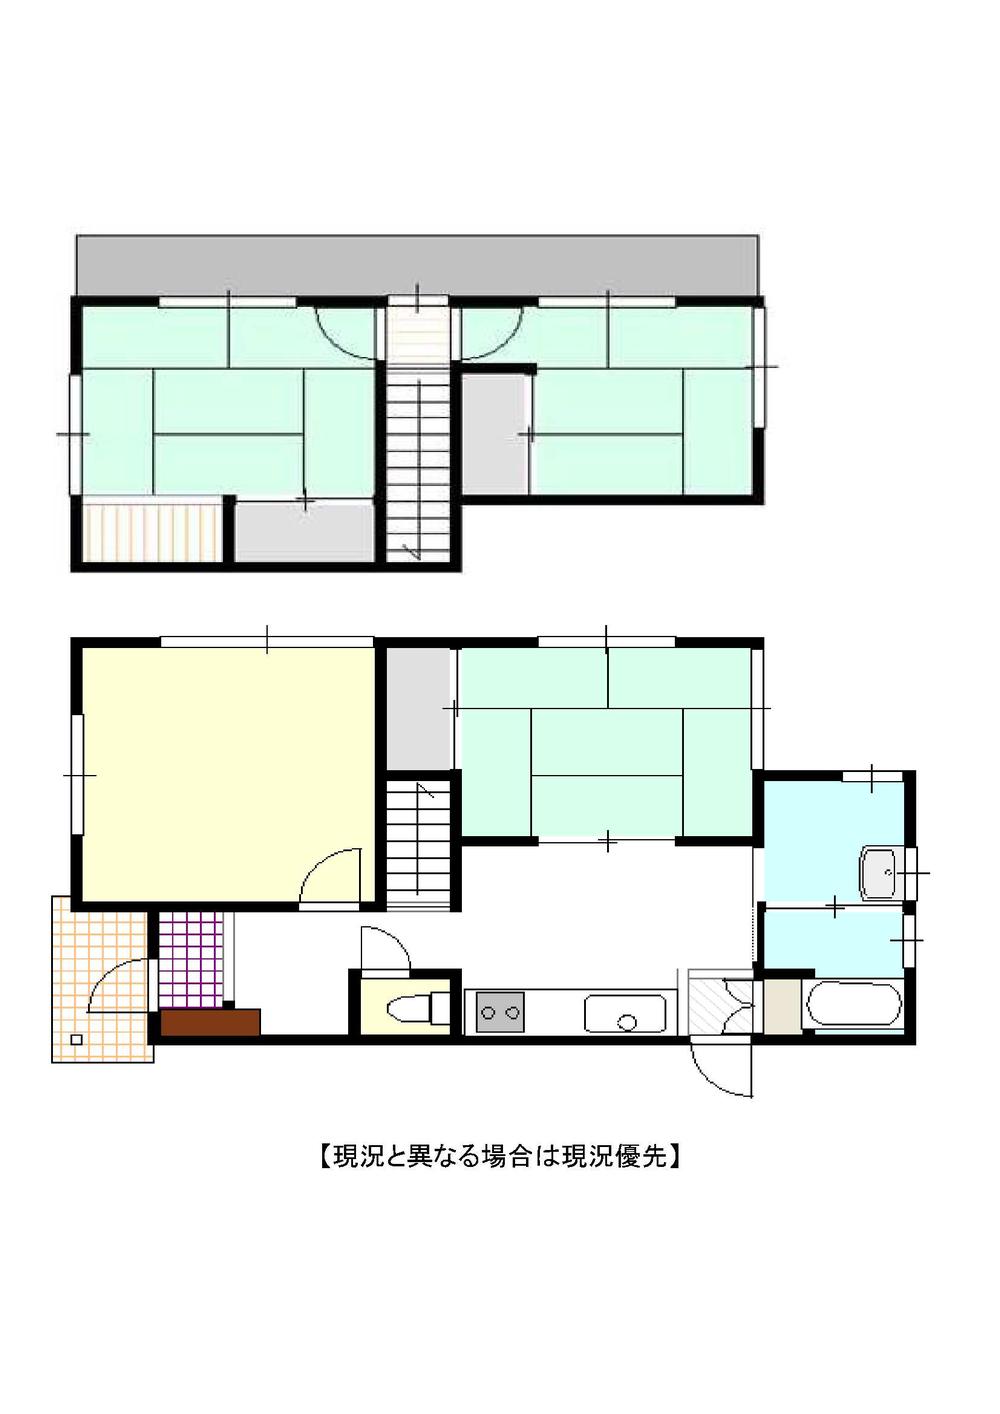 Floor plan. 8.5 million yen, 4K, Land area 162.89 sq m , Building area 76.01 sq m